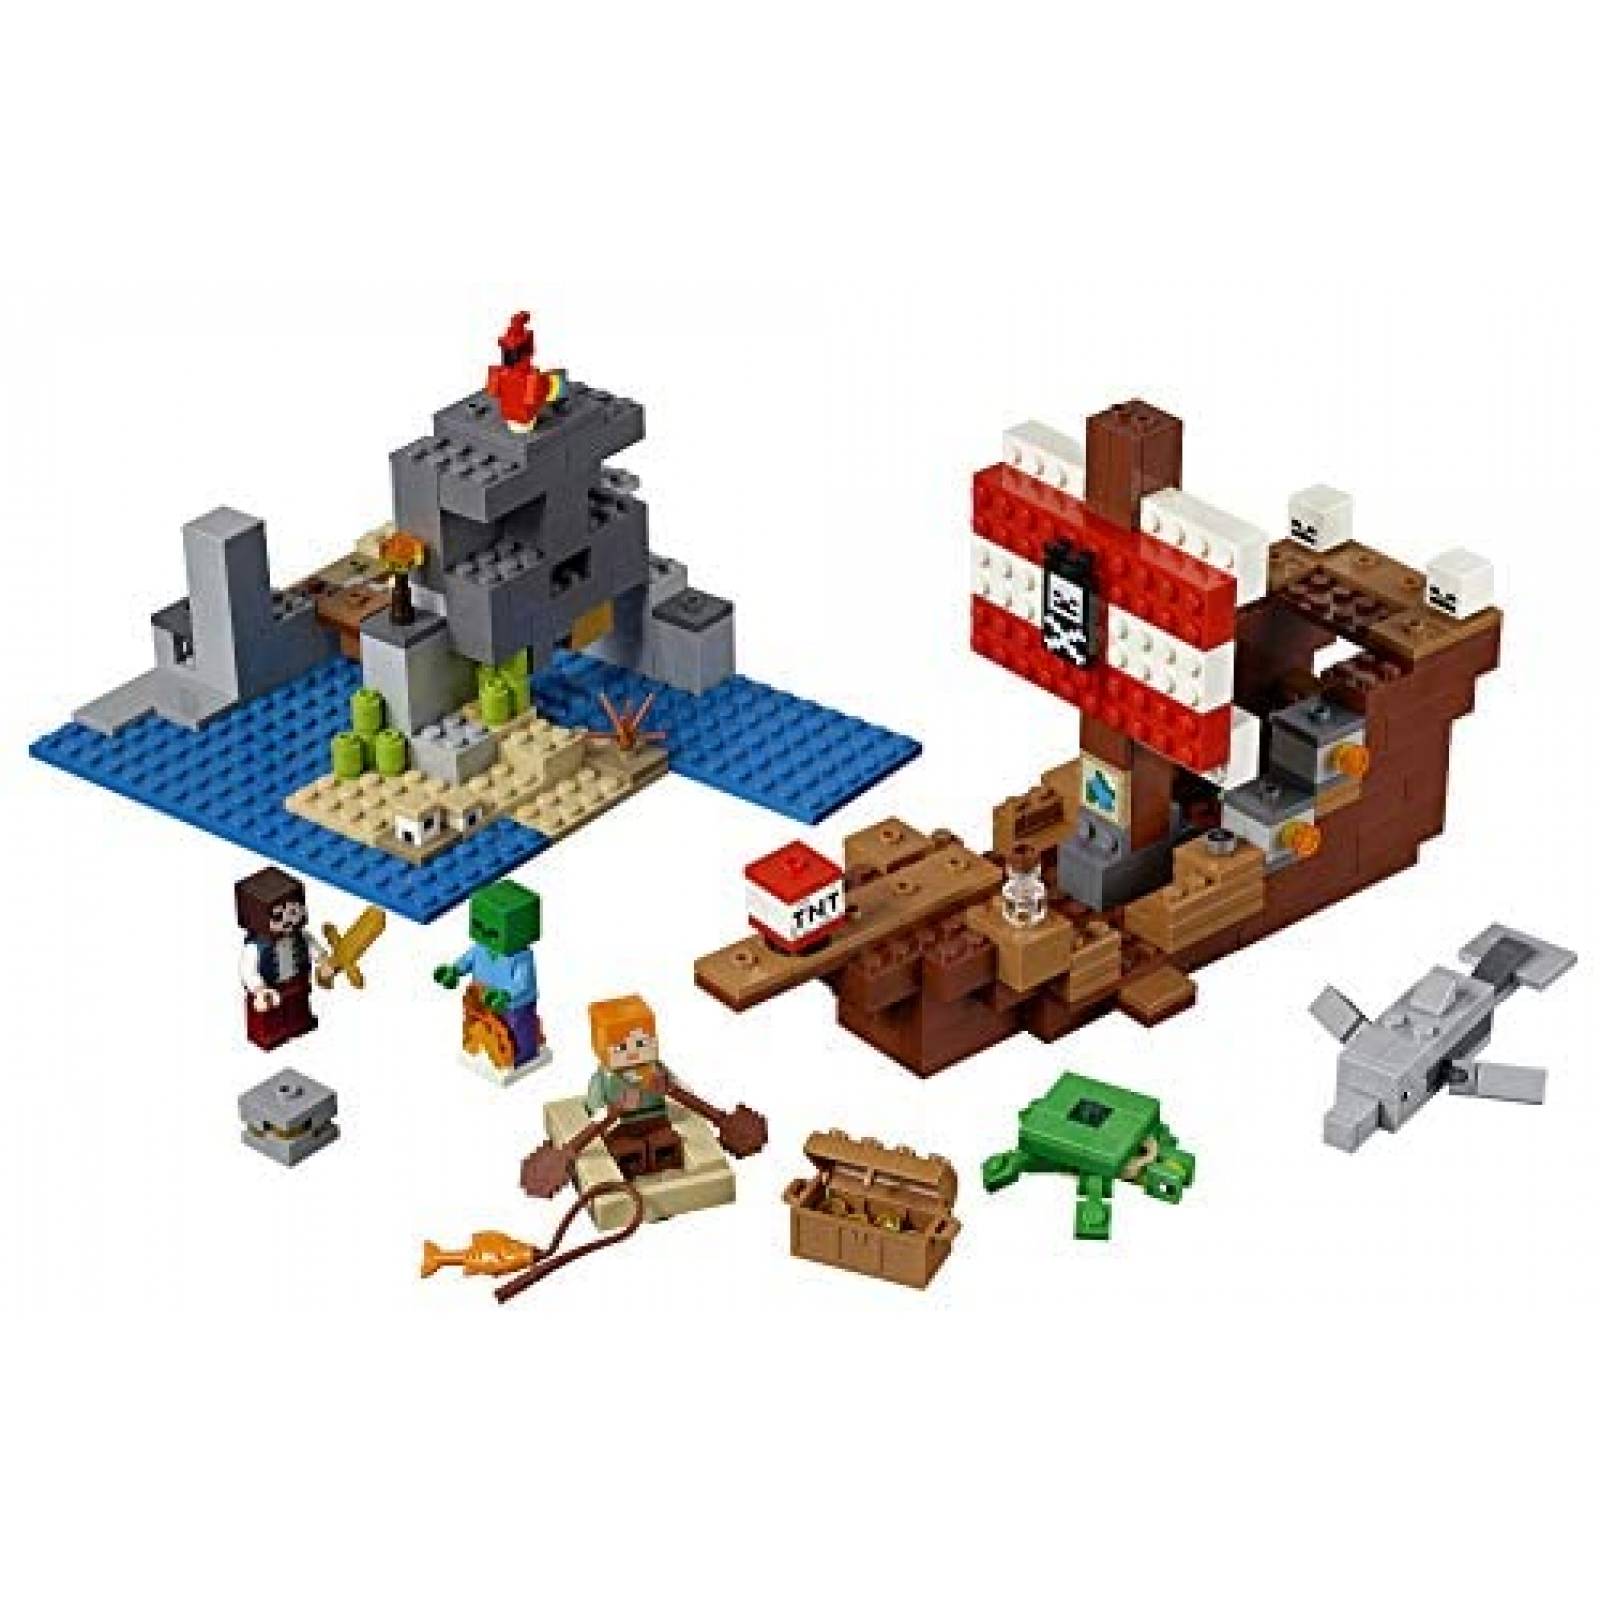 Set de Construcción LEGO Minecraft The Pirate Ship 386 Pzs